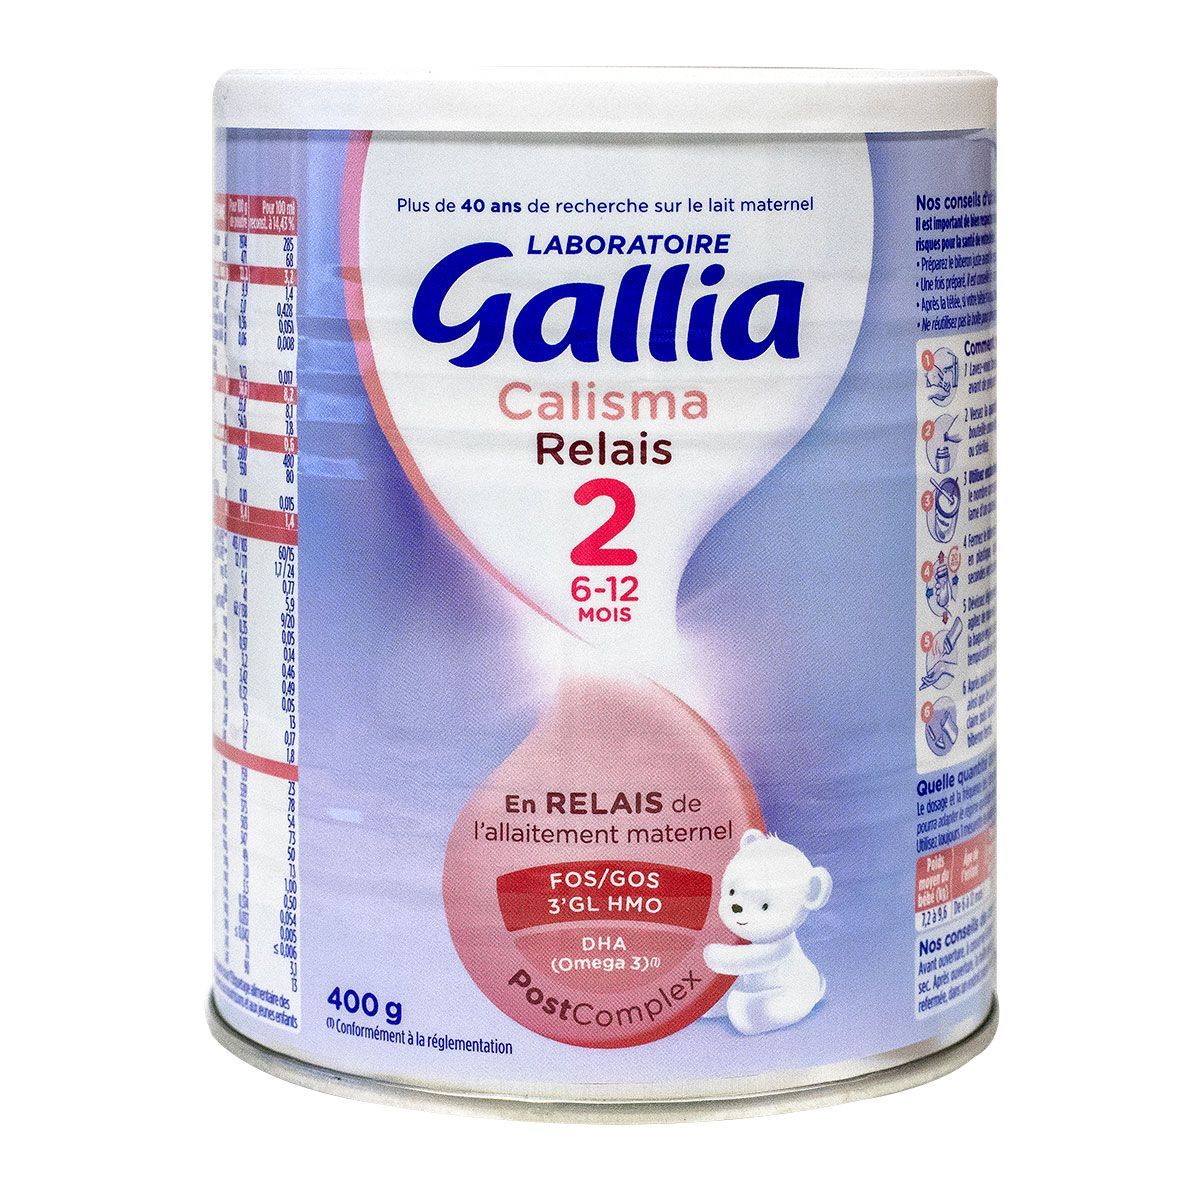 Calisma relais 2ème âge 6-12 mois 400g est un lait infantile